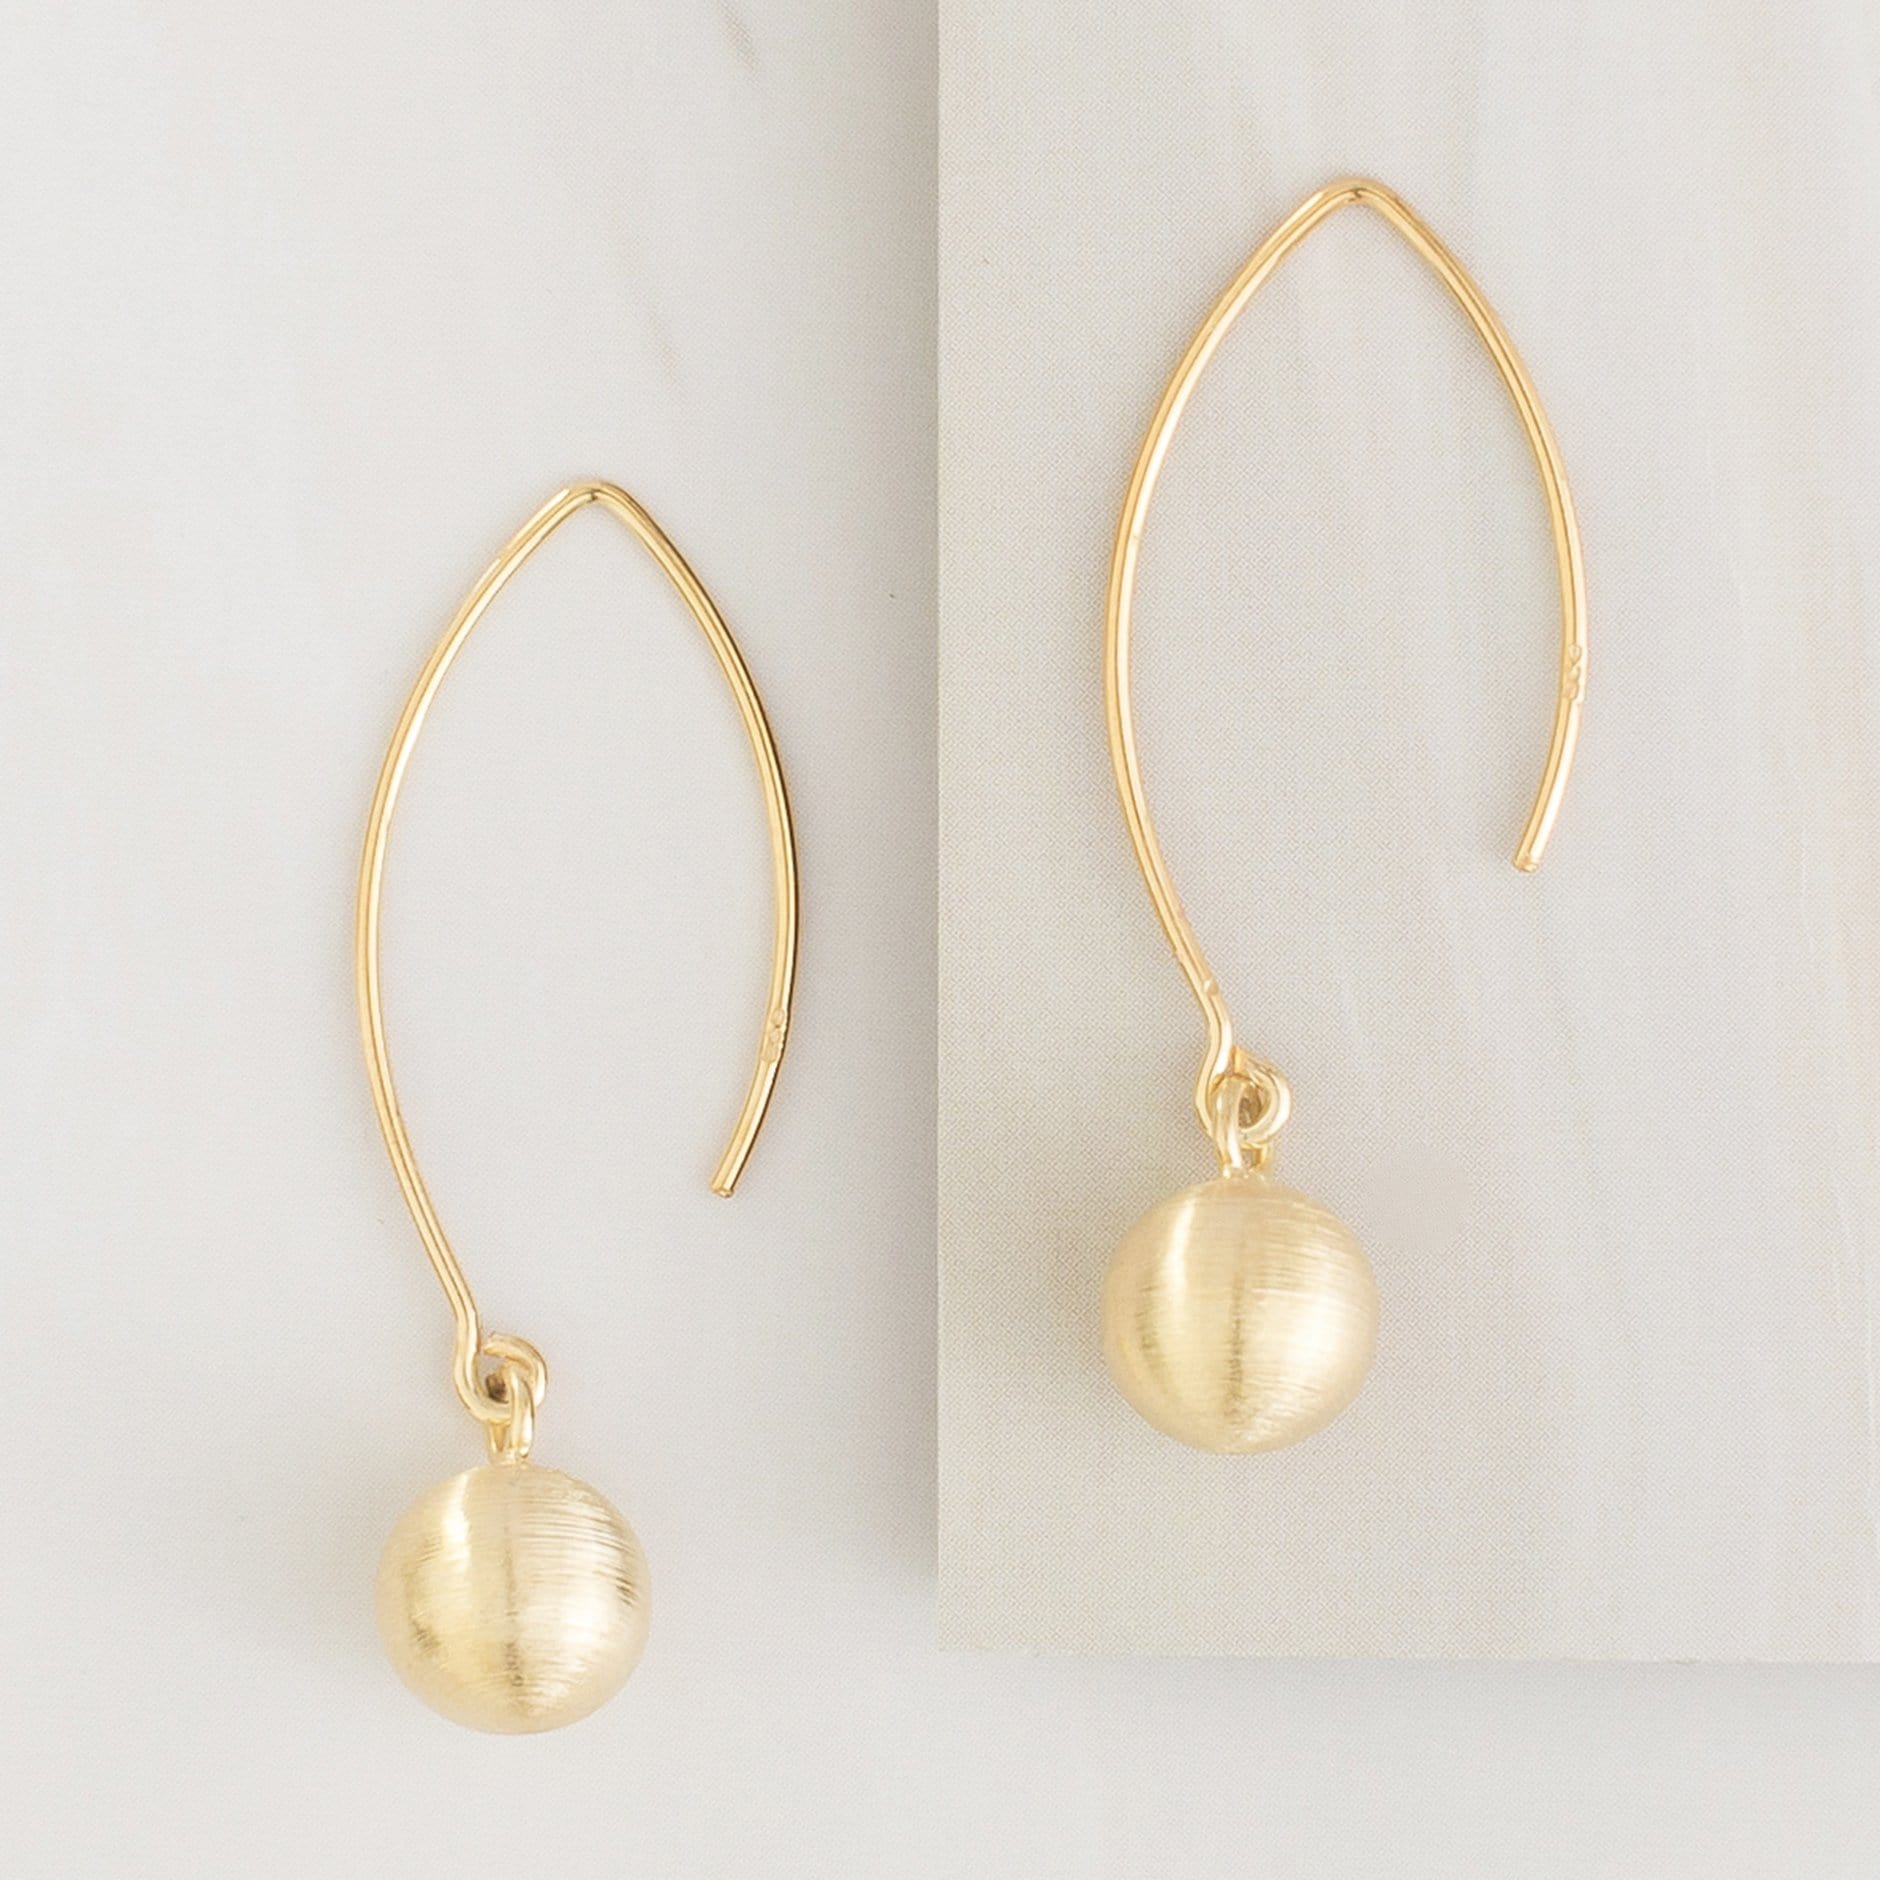 Emblem Jewelry Earrings Gold Tone / 8 mm Terrene Dancing Matte Ball Drop Earrings